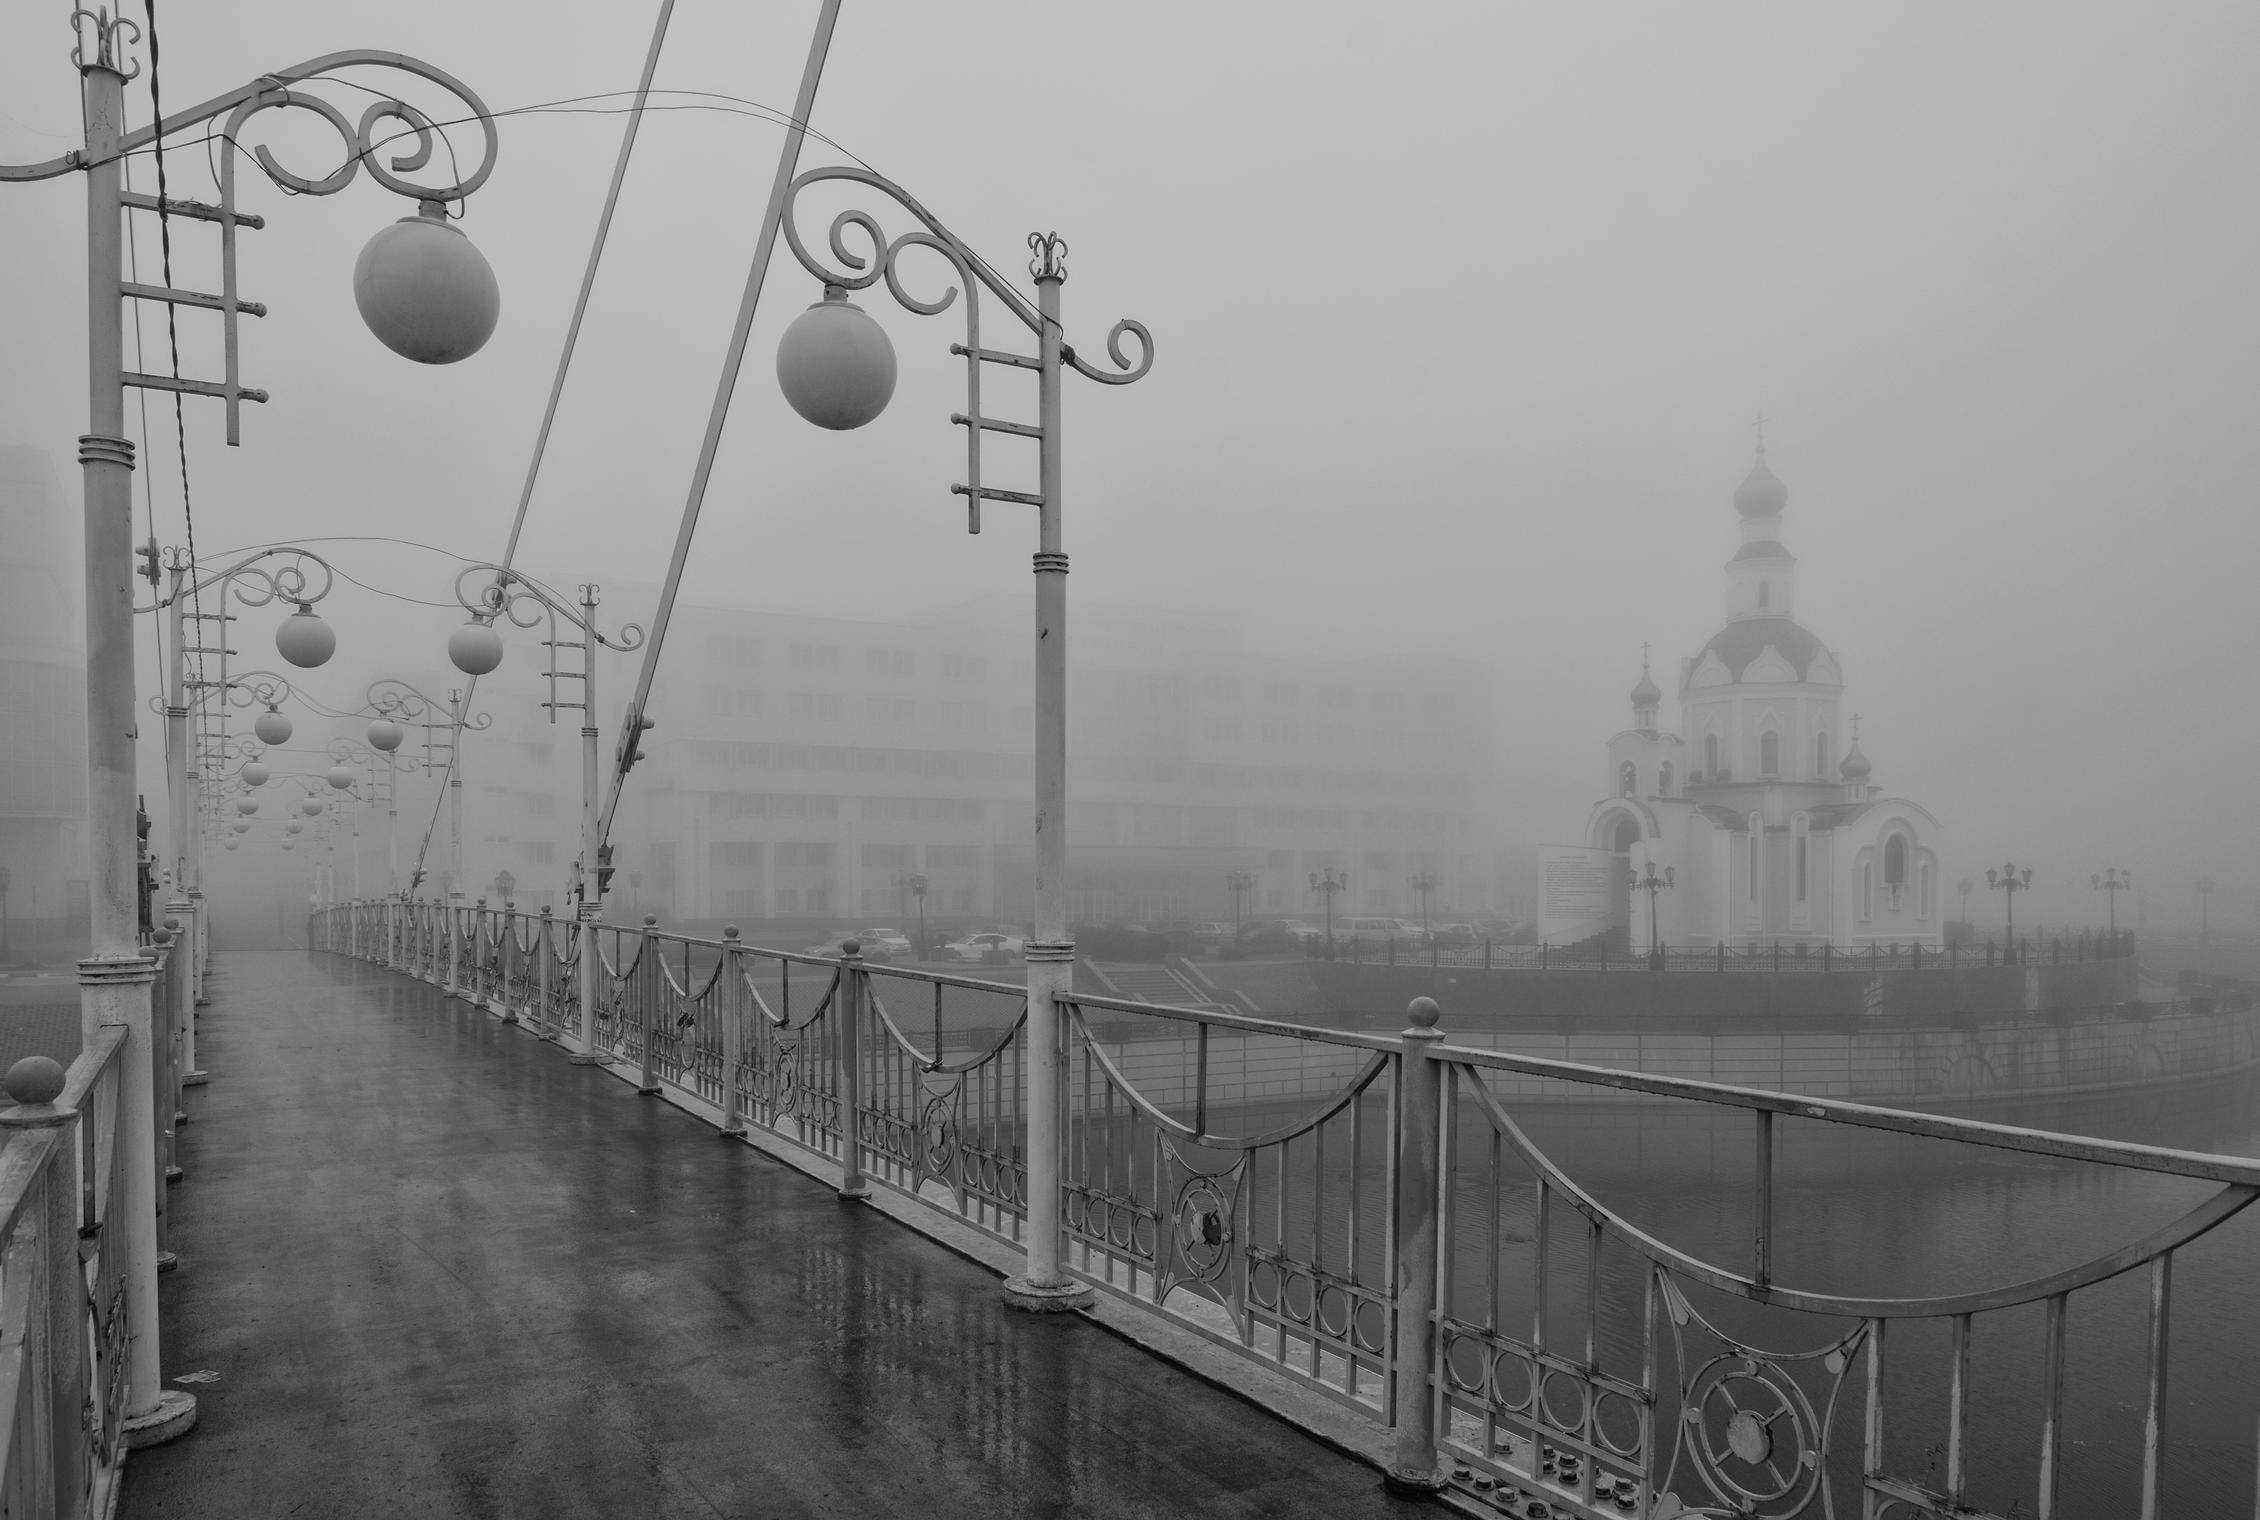 "Город окутал туман..."